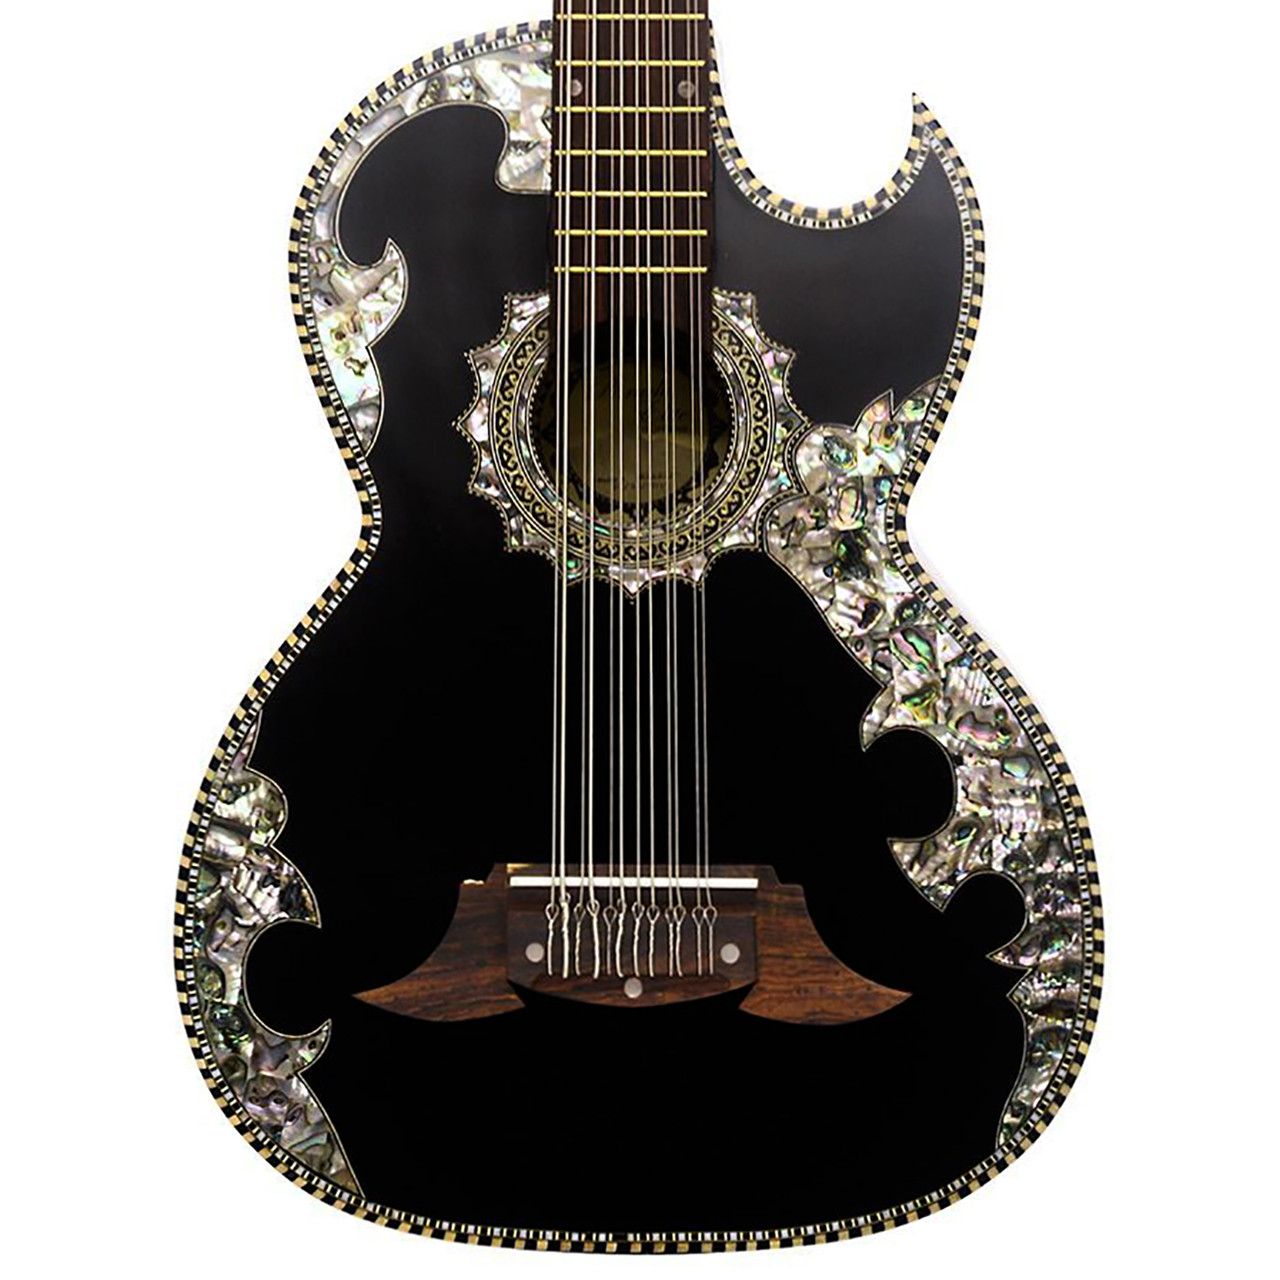 Paracho Elite Belleza 12 String Bajo Sexto Acoustic Guitar With Solid Cedar Top Black Belleza 5791